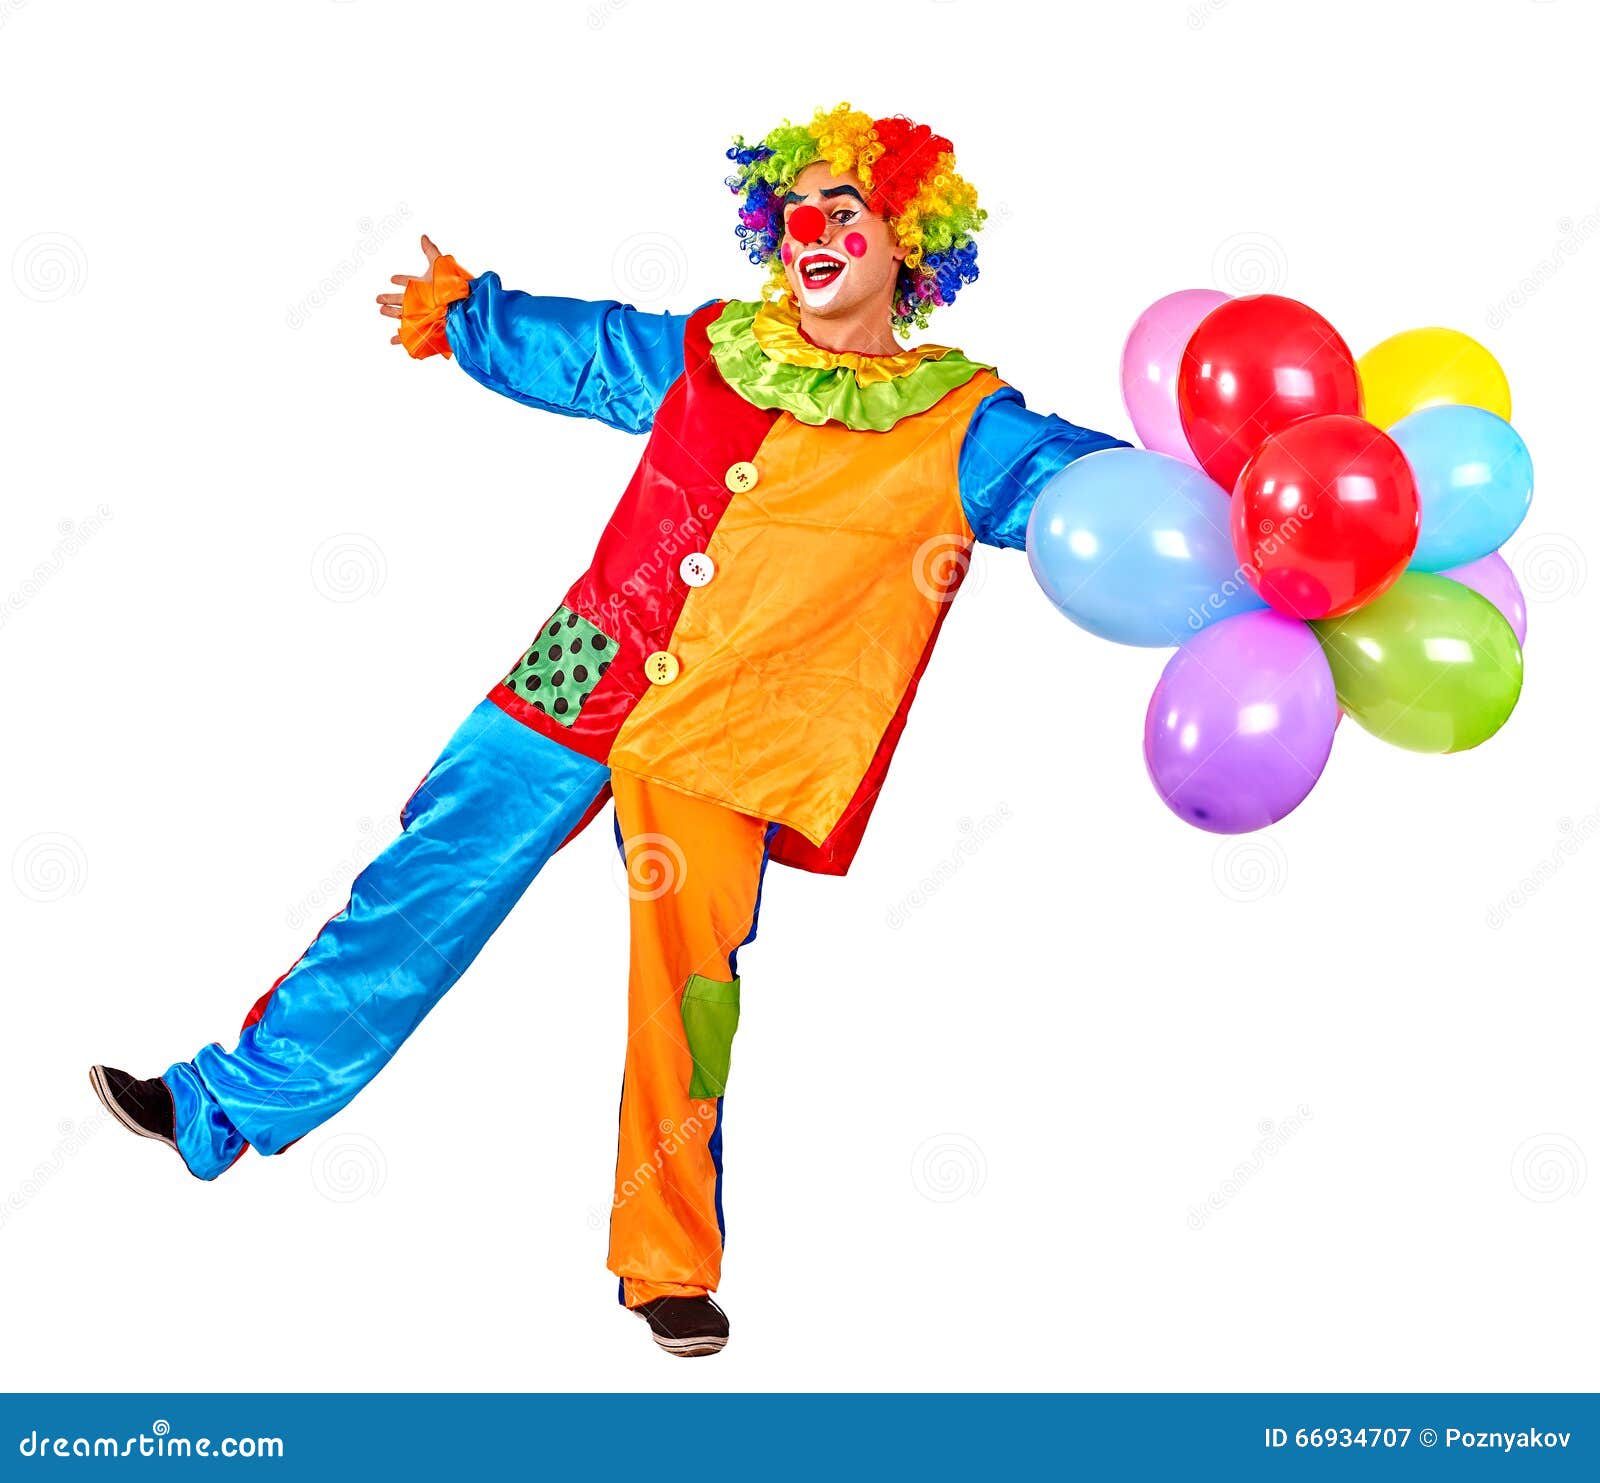 Развлечение с клоуном. С днем рождения клоун. Клоун держит в руках. Клоун день рождения-и-я-и-я. Держи клоун.